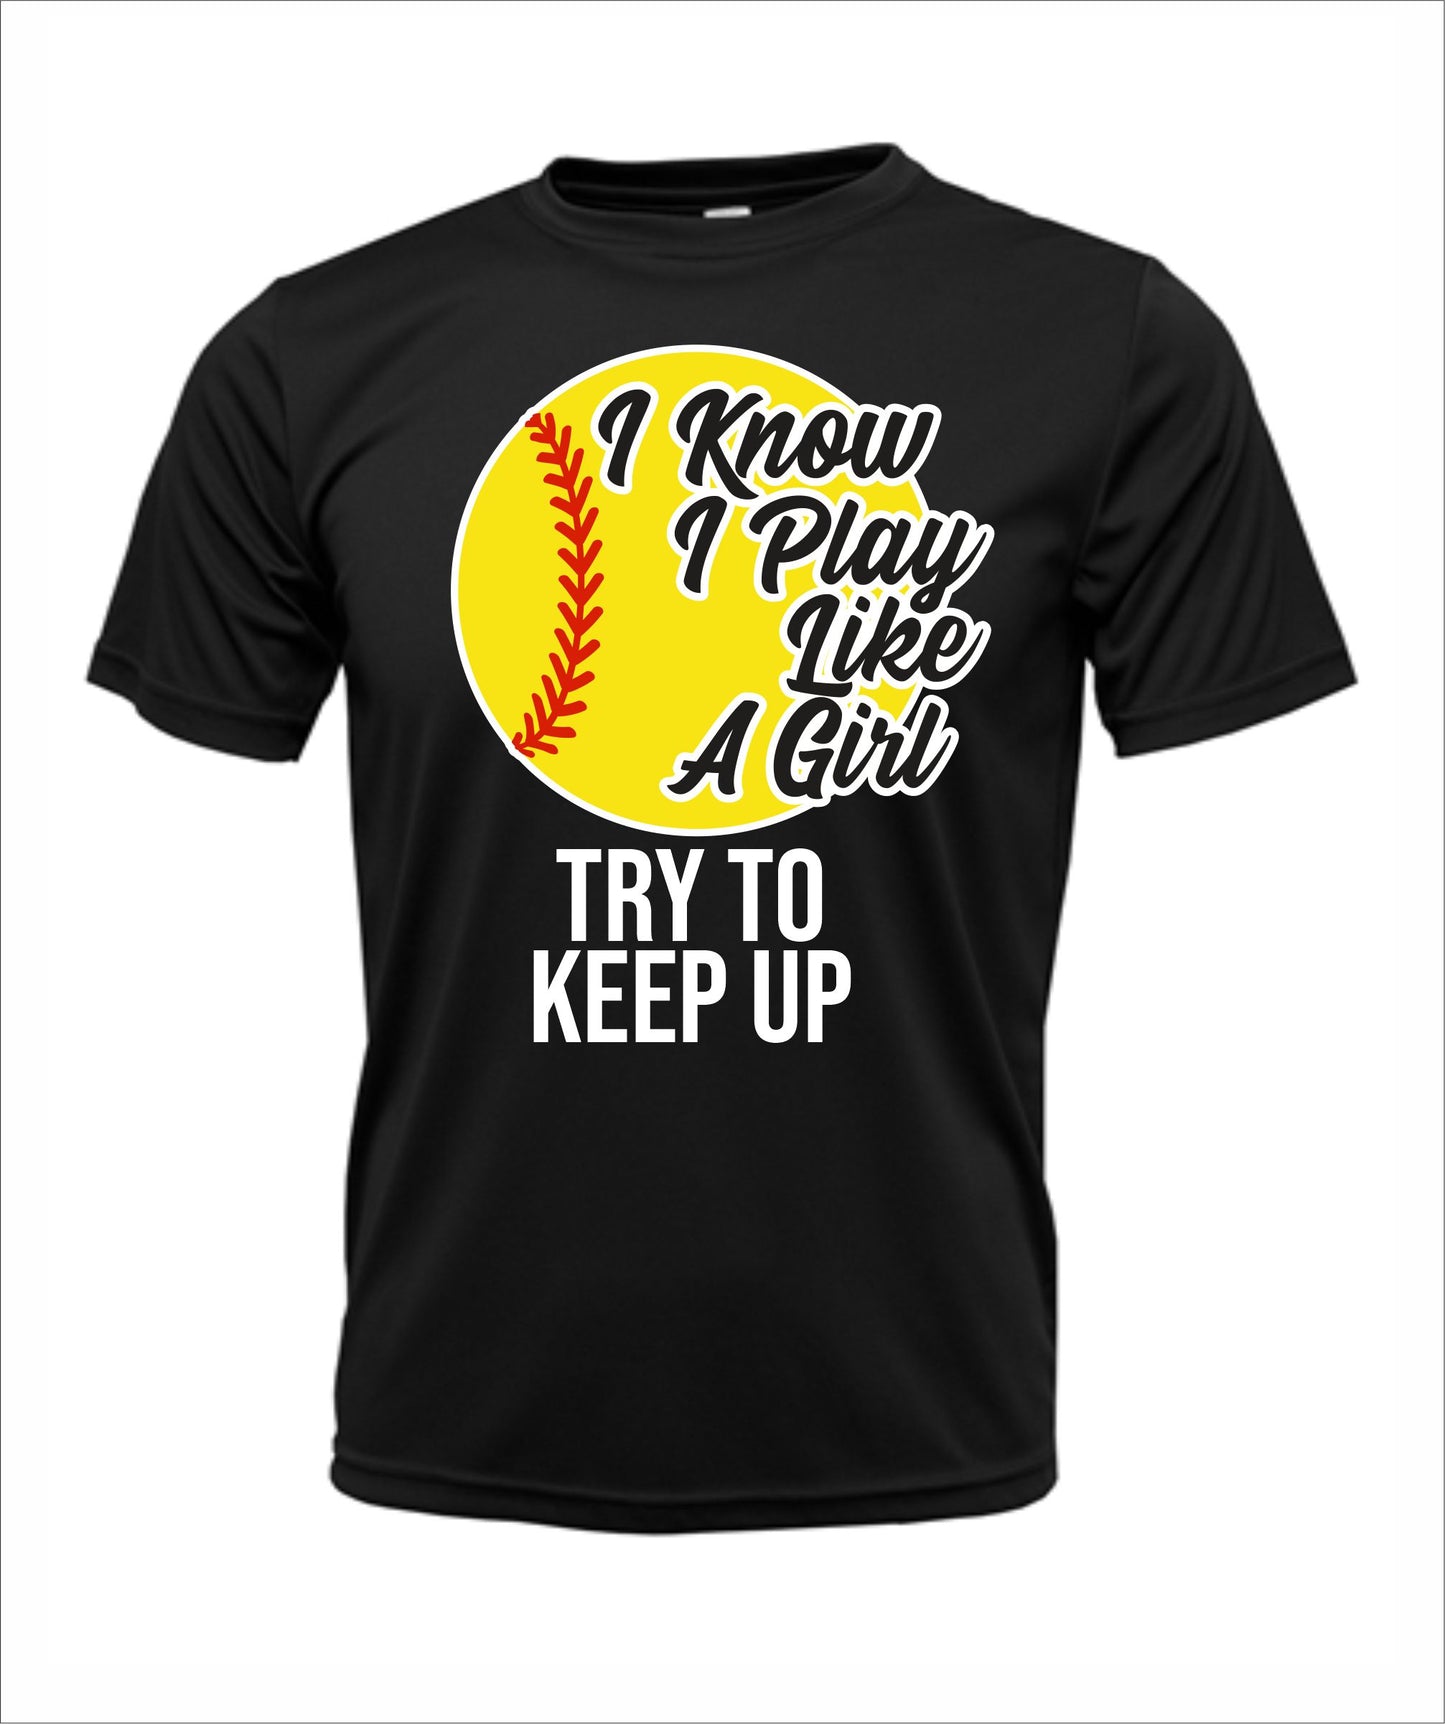 Softball "Play Like a Girl" Cotton T-Shirt